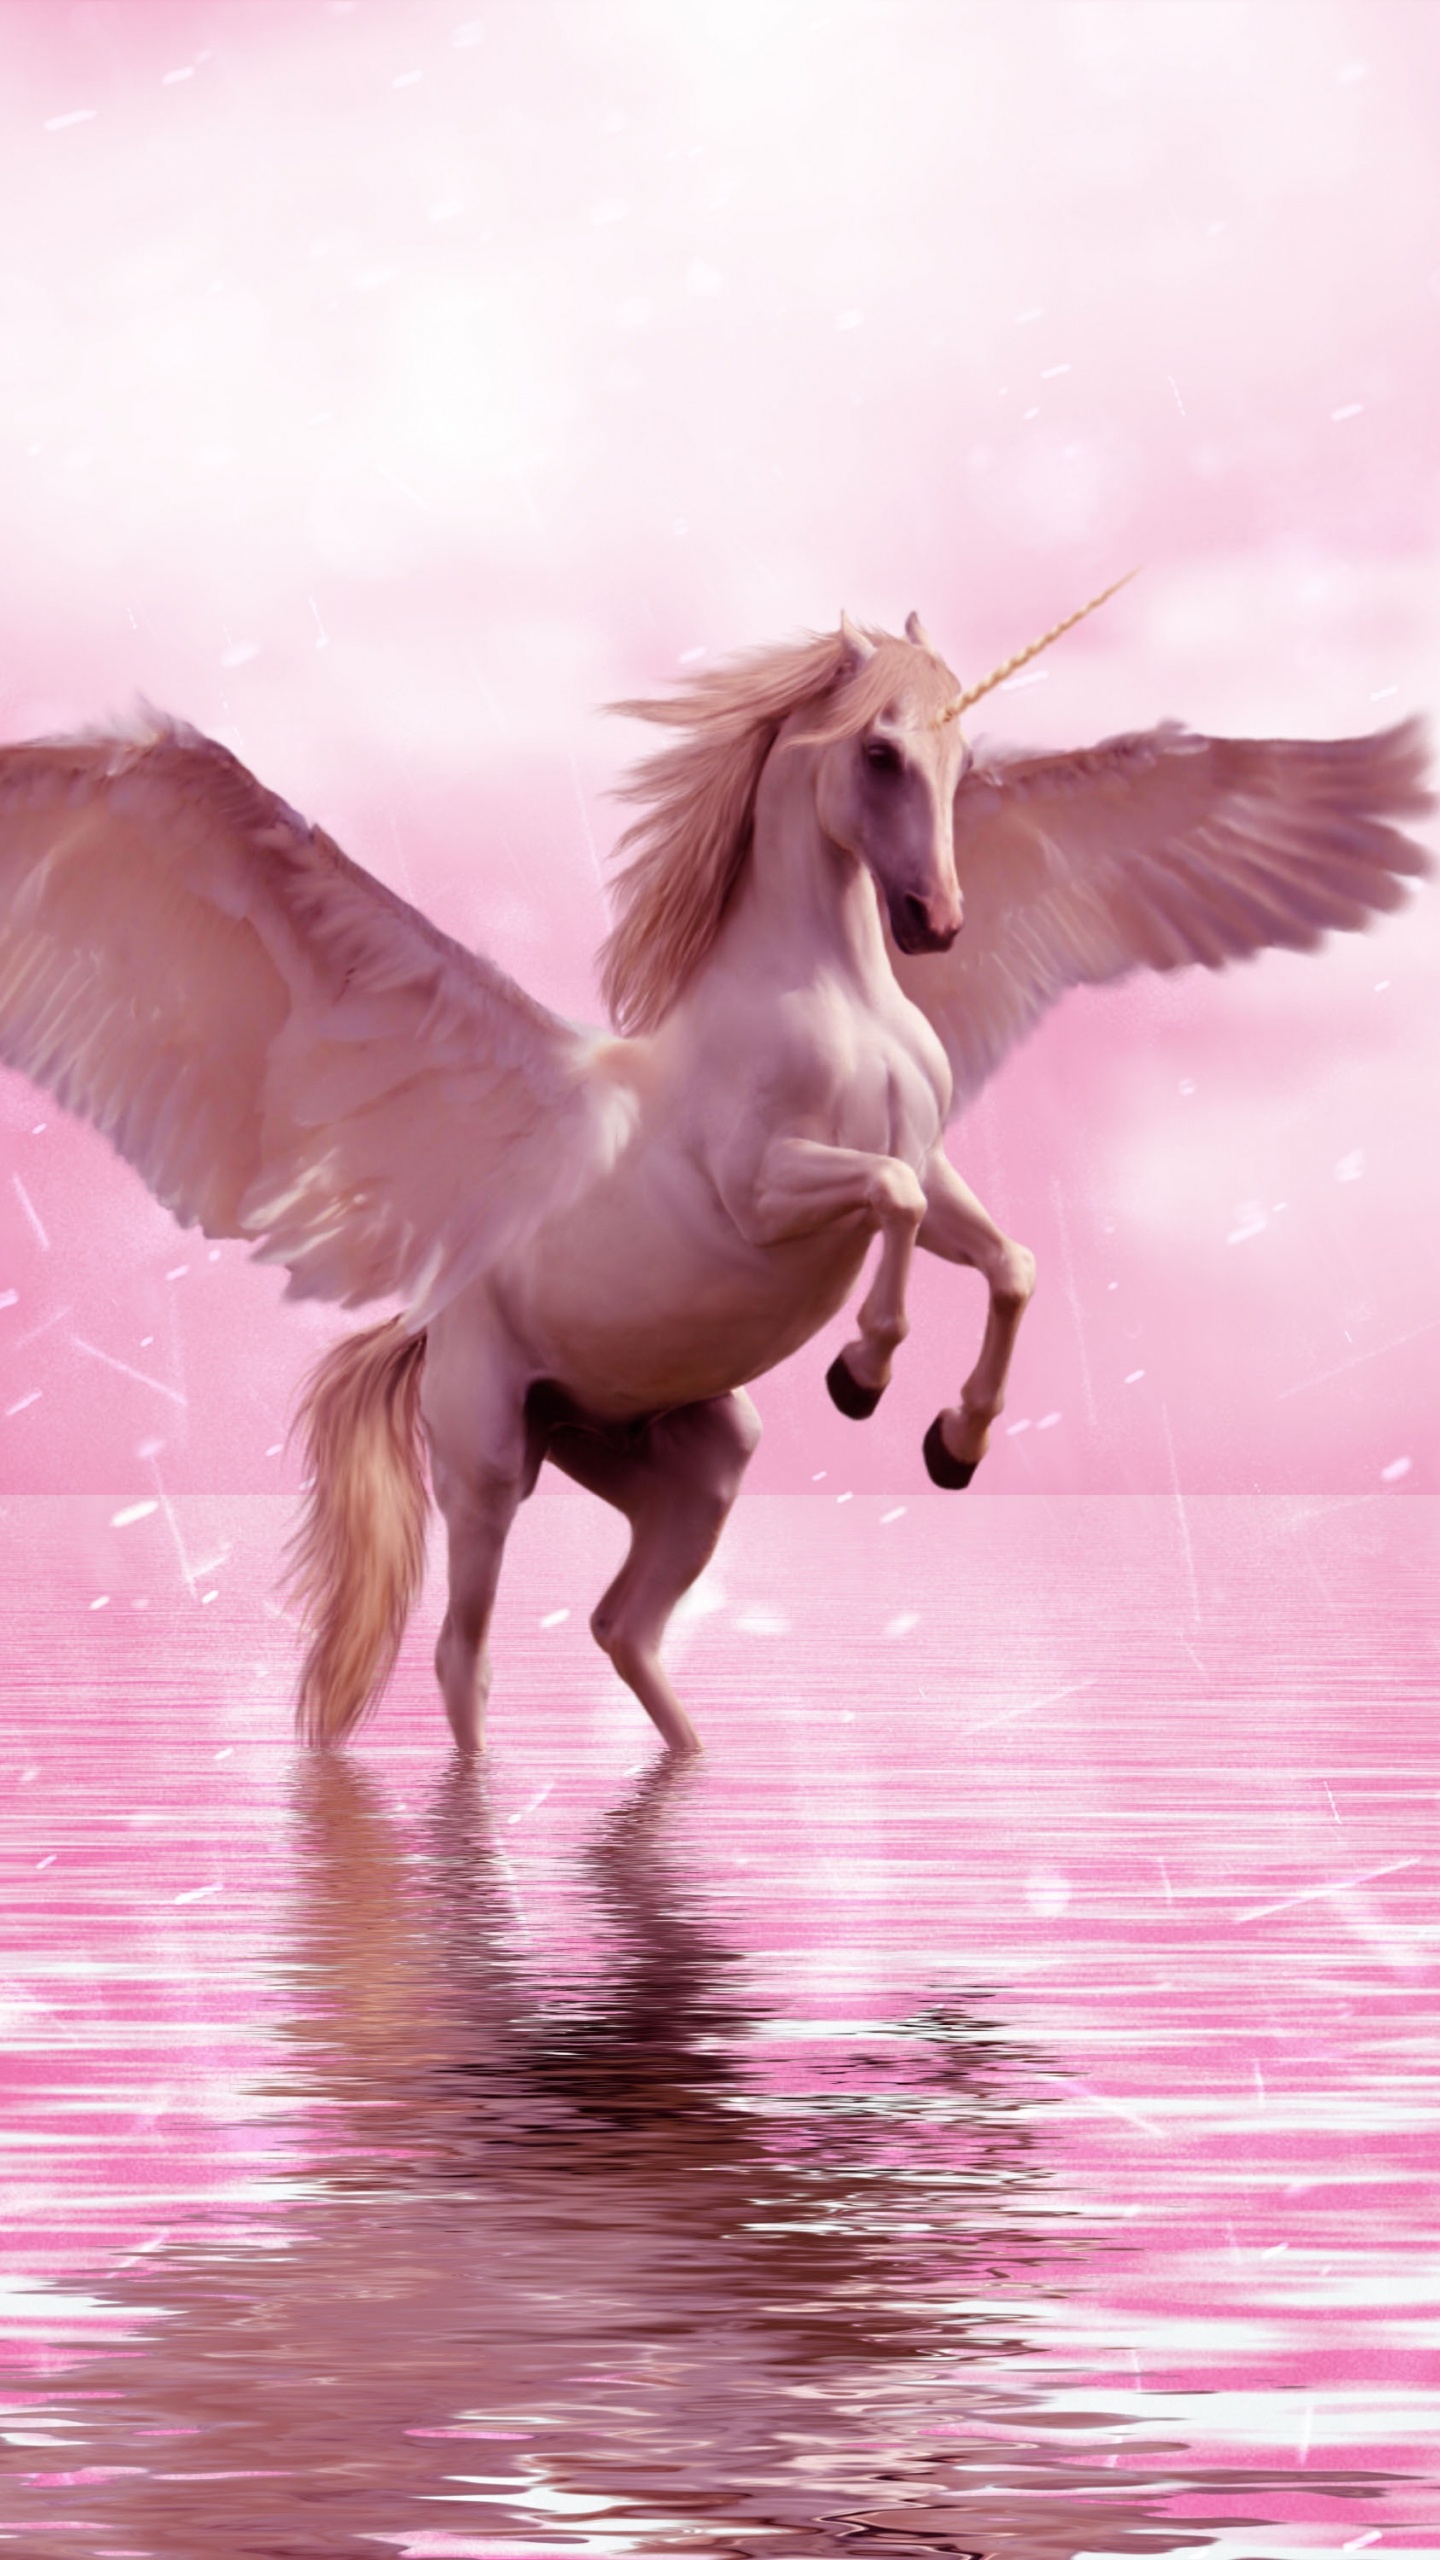 独角兽, 飞马, 翼, 粉红色, 神秘的生物 壁纸 1440x2560 允许